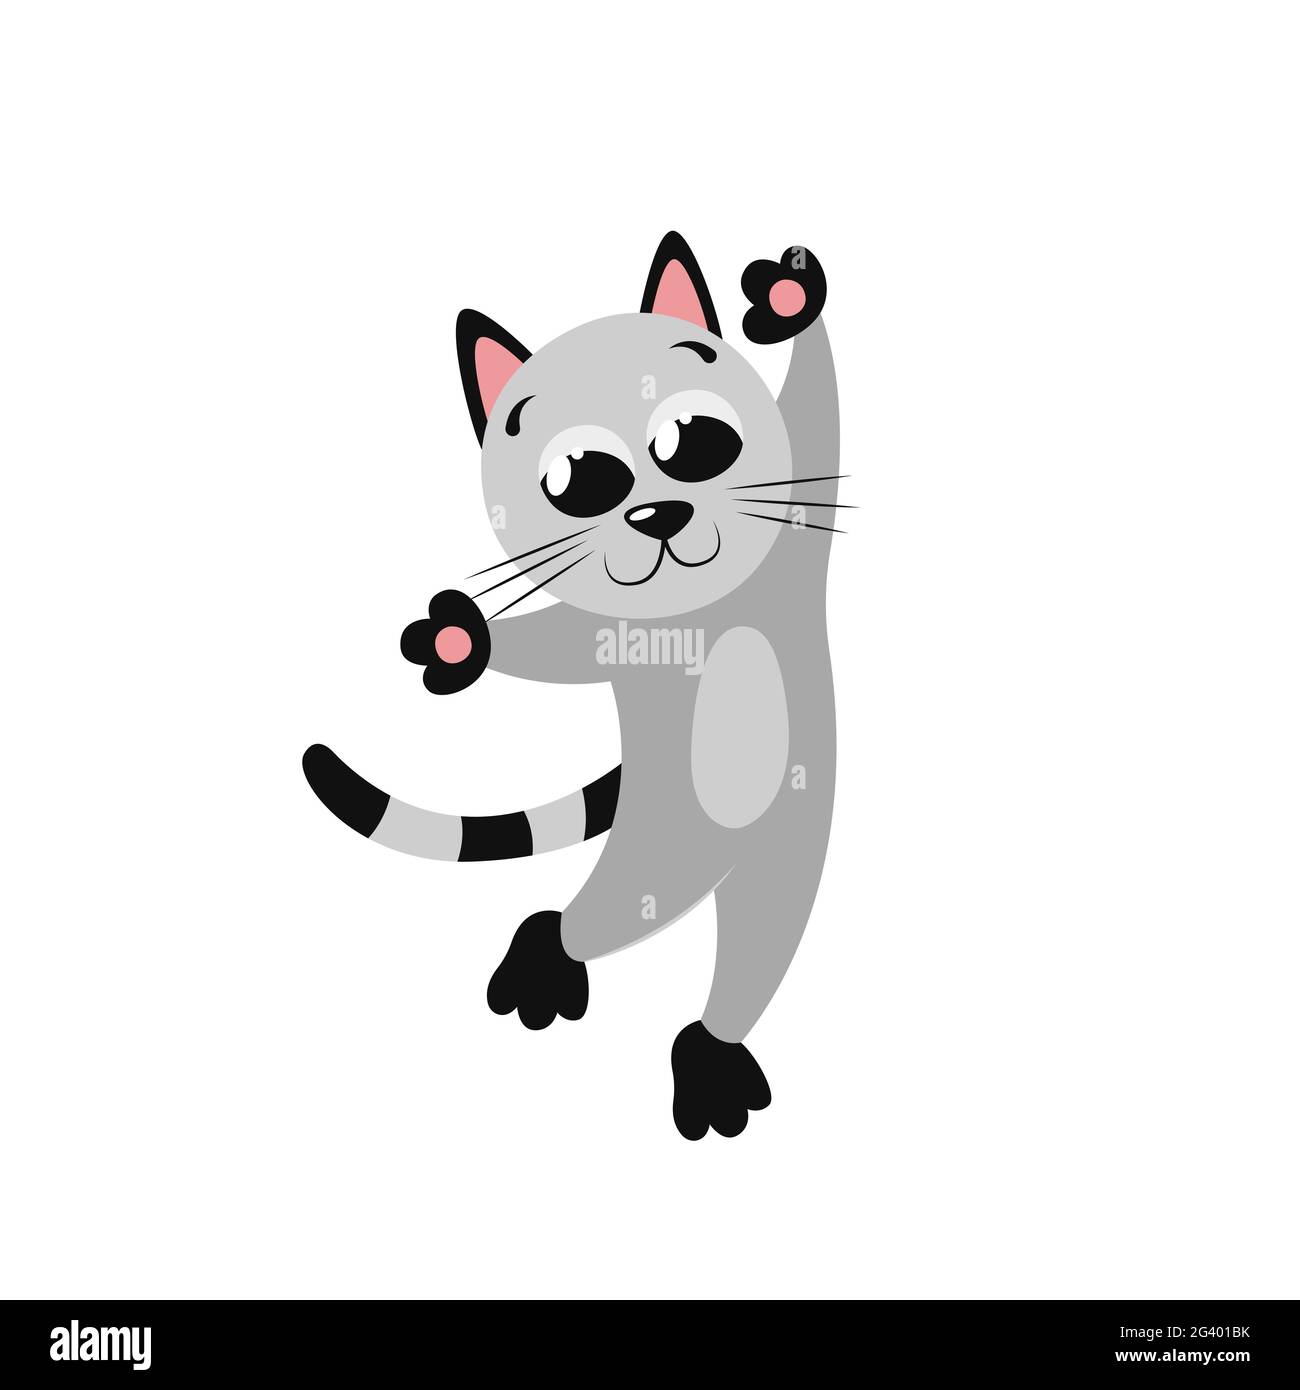 Ein kleines graues Cartoon-Kätzchen tanzt auf seinen Hinterbeinen lustig. Schöne niedliche flache Illustration für Kinderzimmer Dekor. Cooler Druck für Poster, Geschenkkarte, Stock Vektor